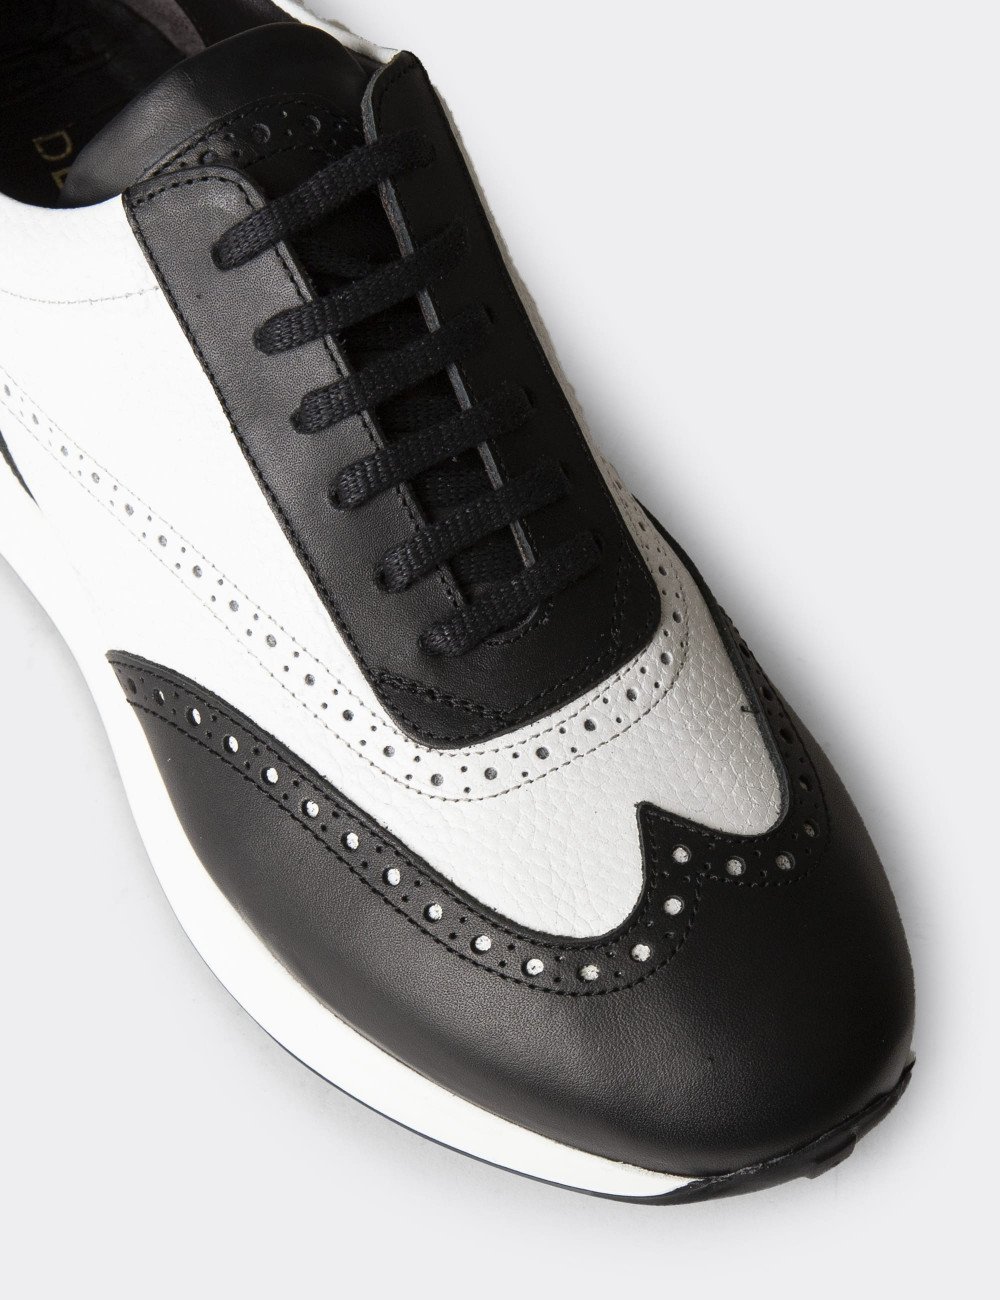 Hakiki Deri Siyah Beyaz Erkek Sneaker Ayakkabı - 00750MBYZE01